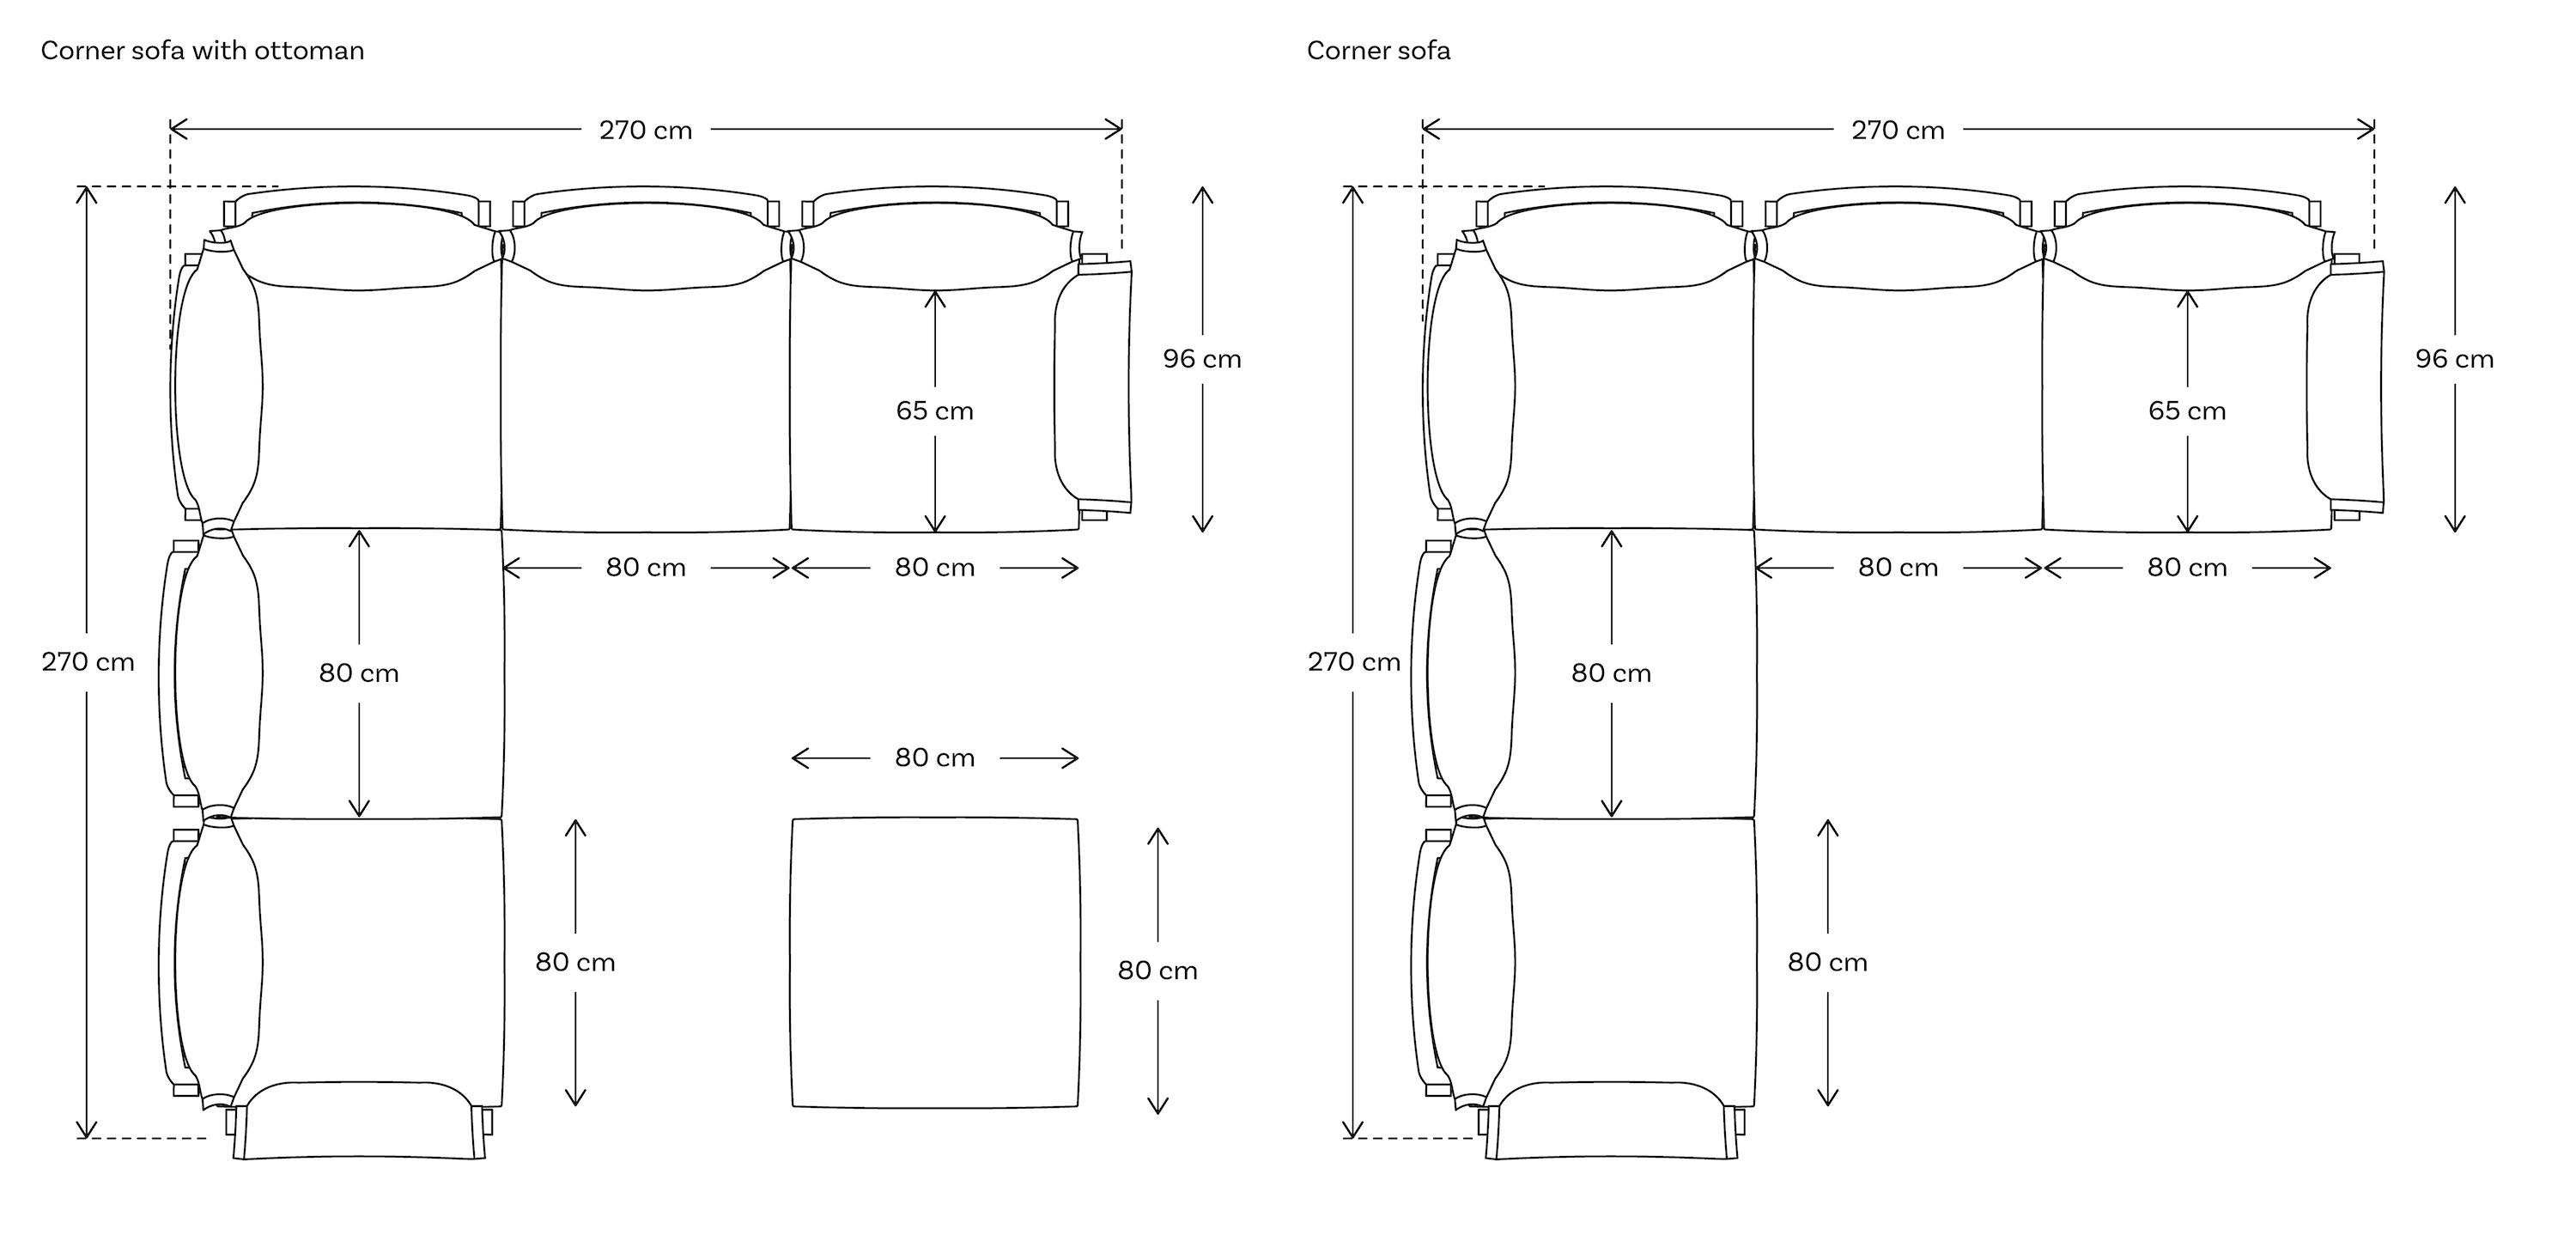 Modular sofa corner dimensions